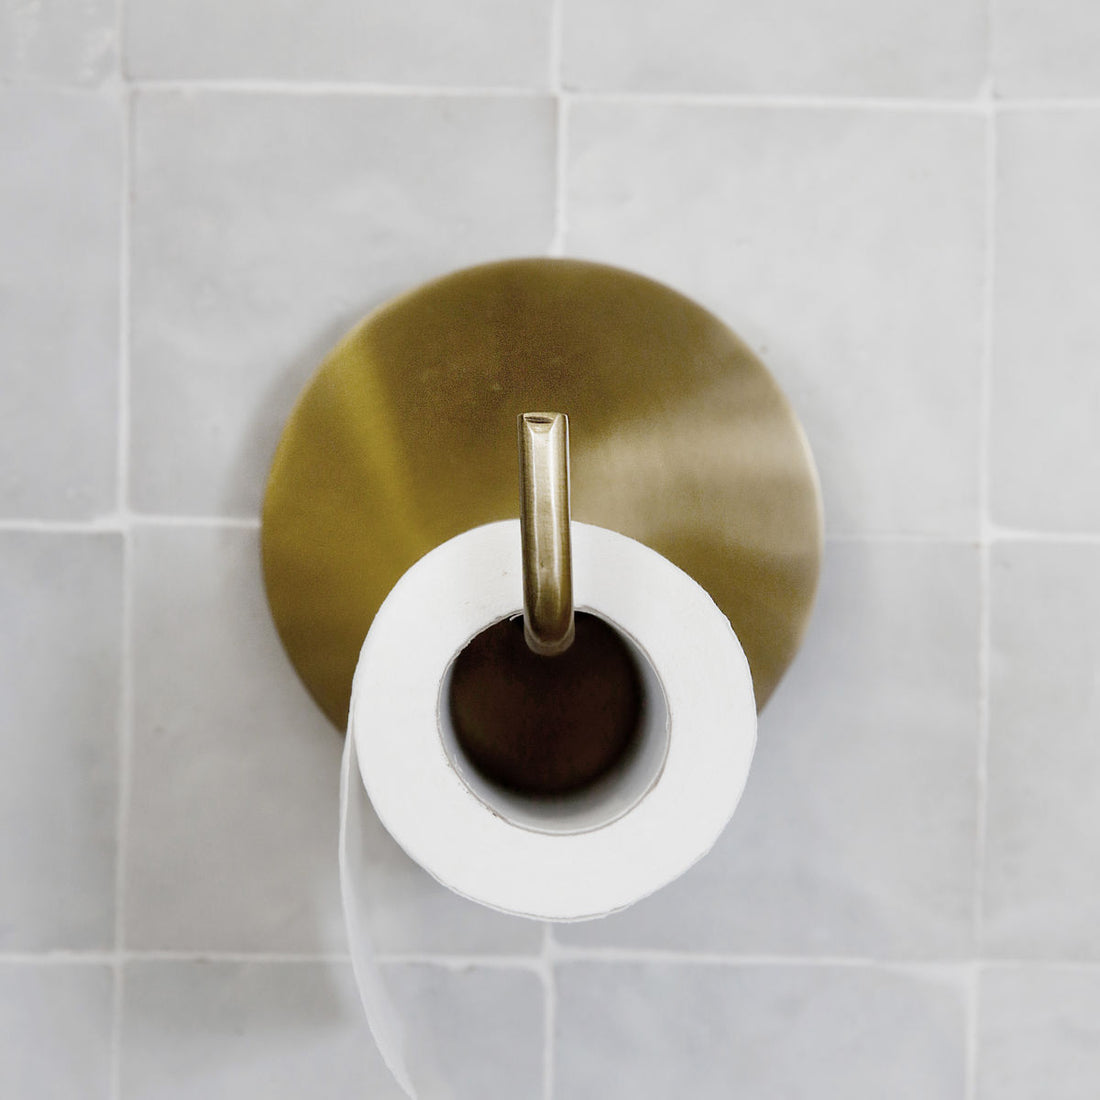 Hausarzt - Toilettenpapierhalter, Text, Messing - L: 12,5 cm, Dia: 13 cm